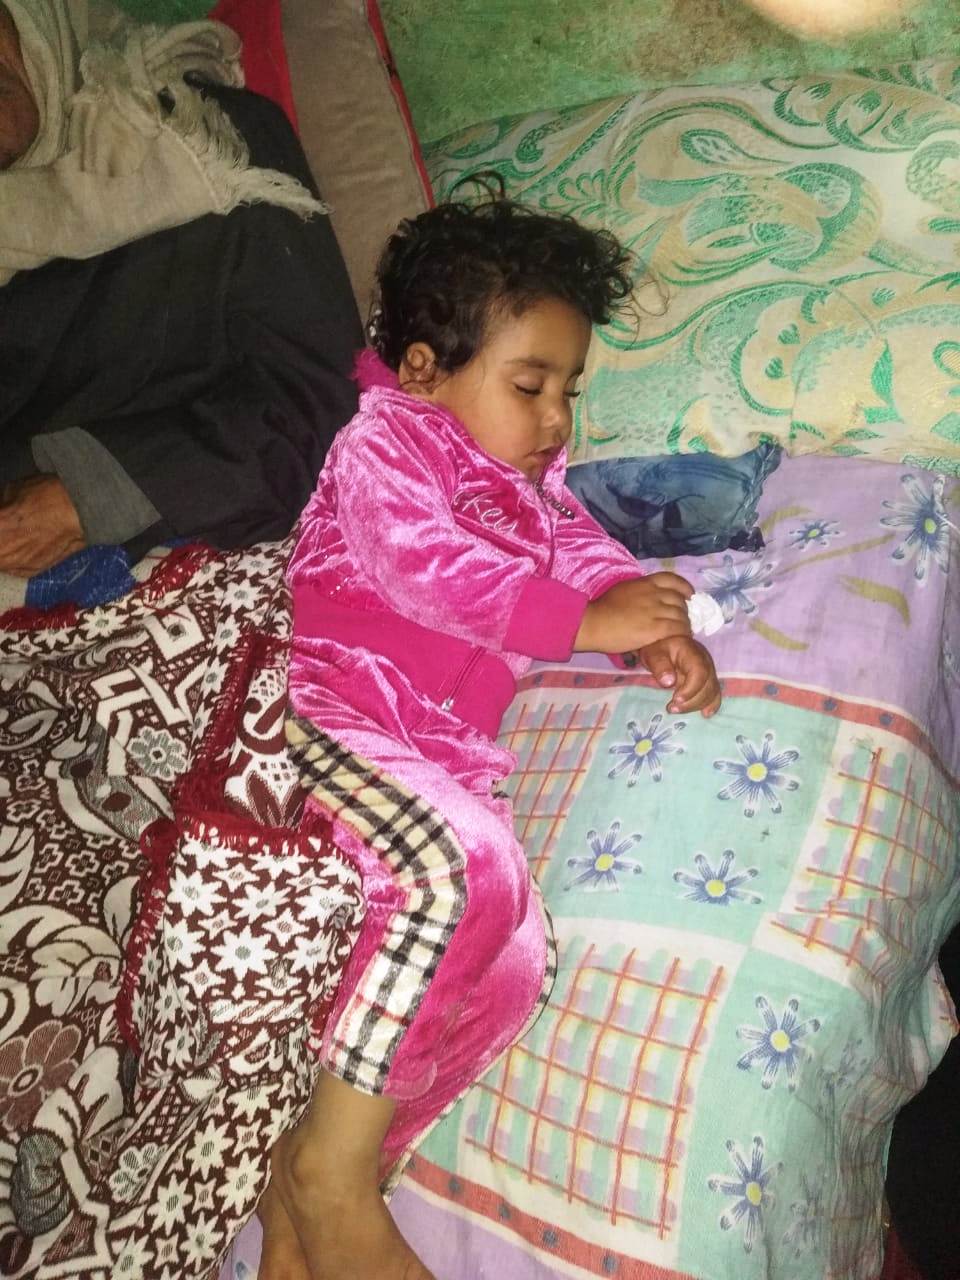 4- الطفلة الصغرى نائمة بعد بكاء مستمر عقب سؤالها عن والدتها